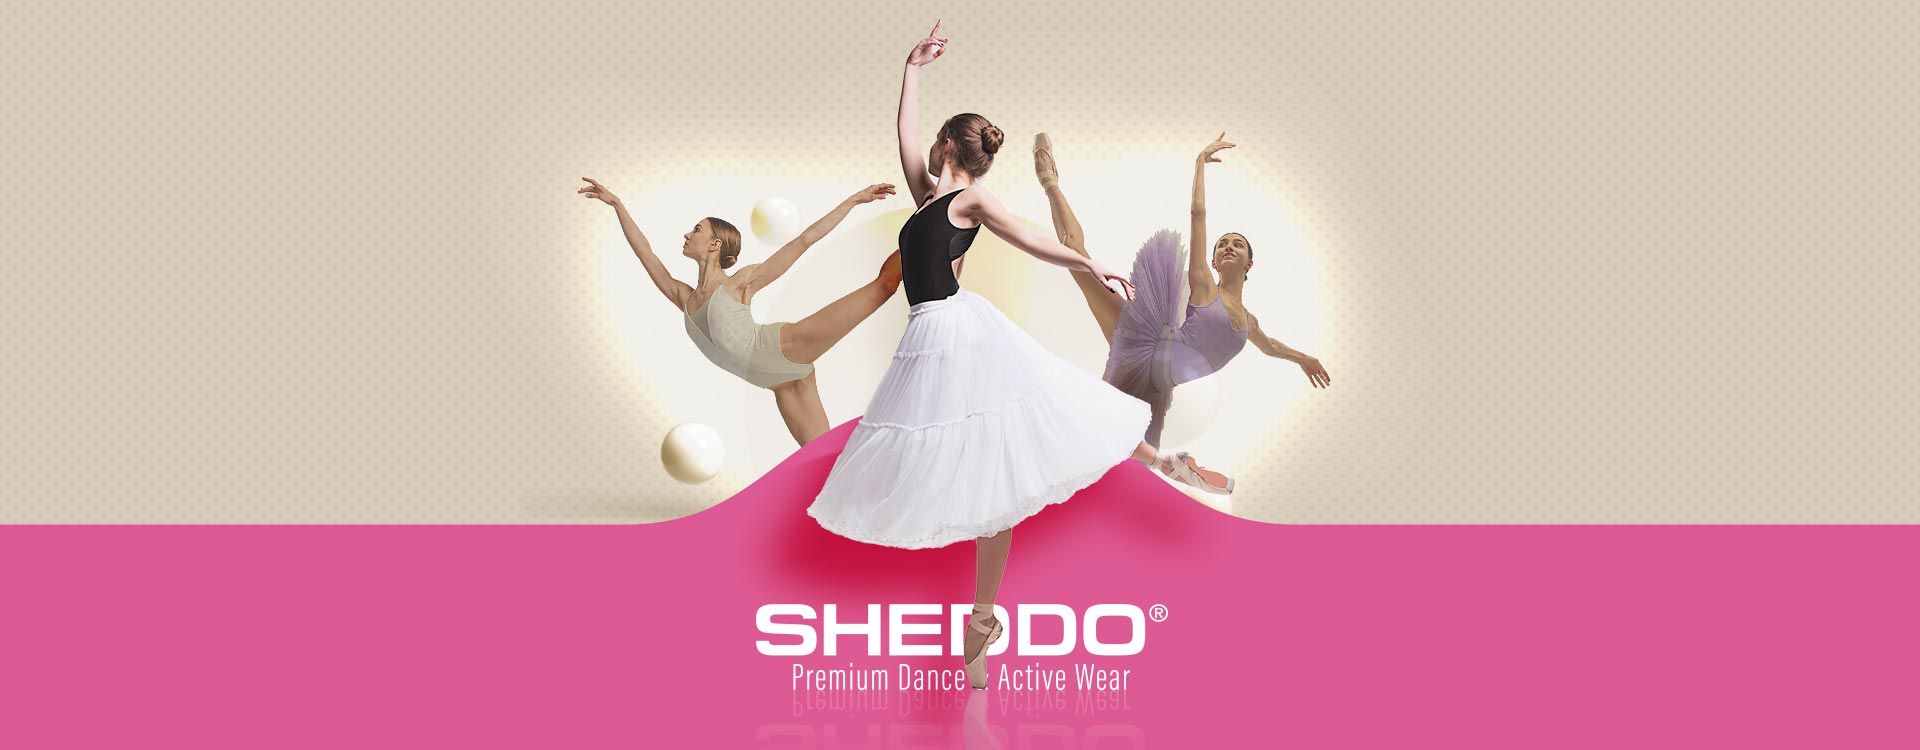 Sheddo® Dance & Active Wear